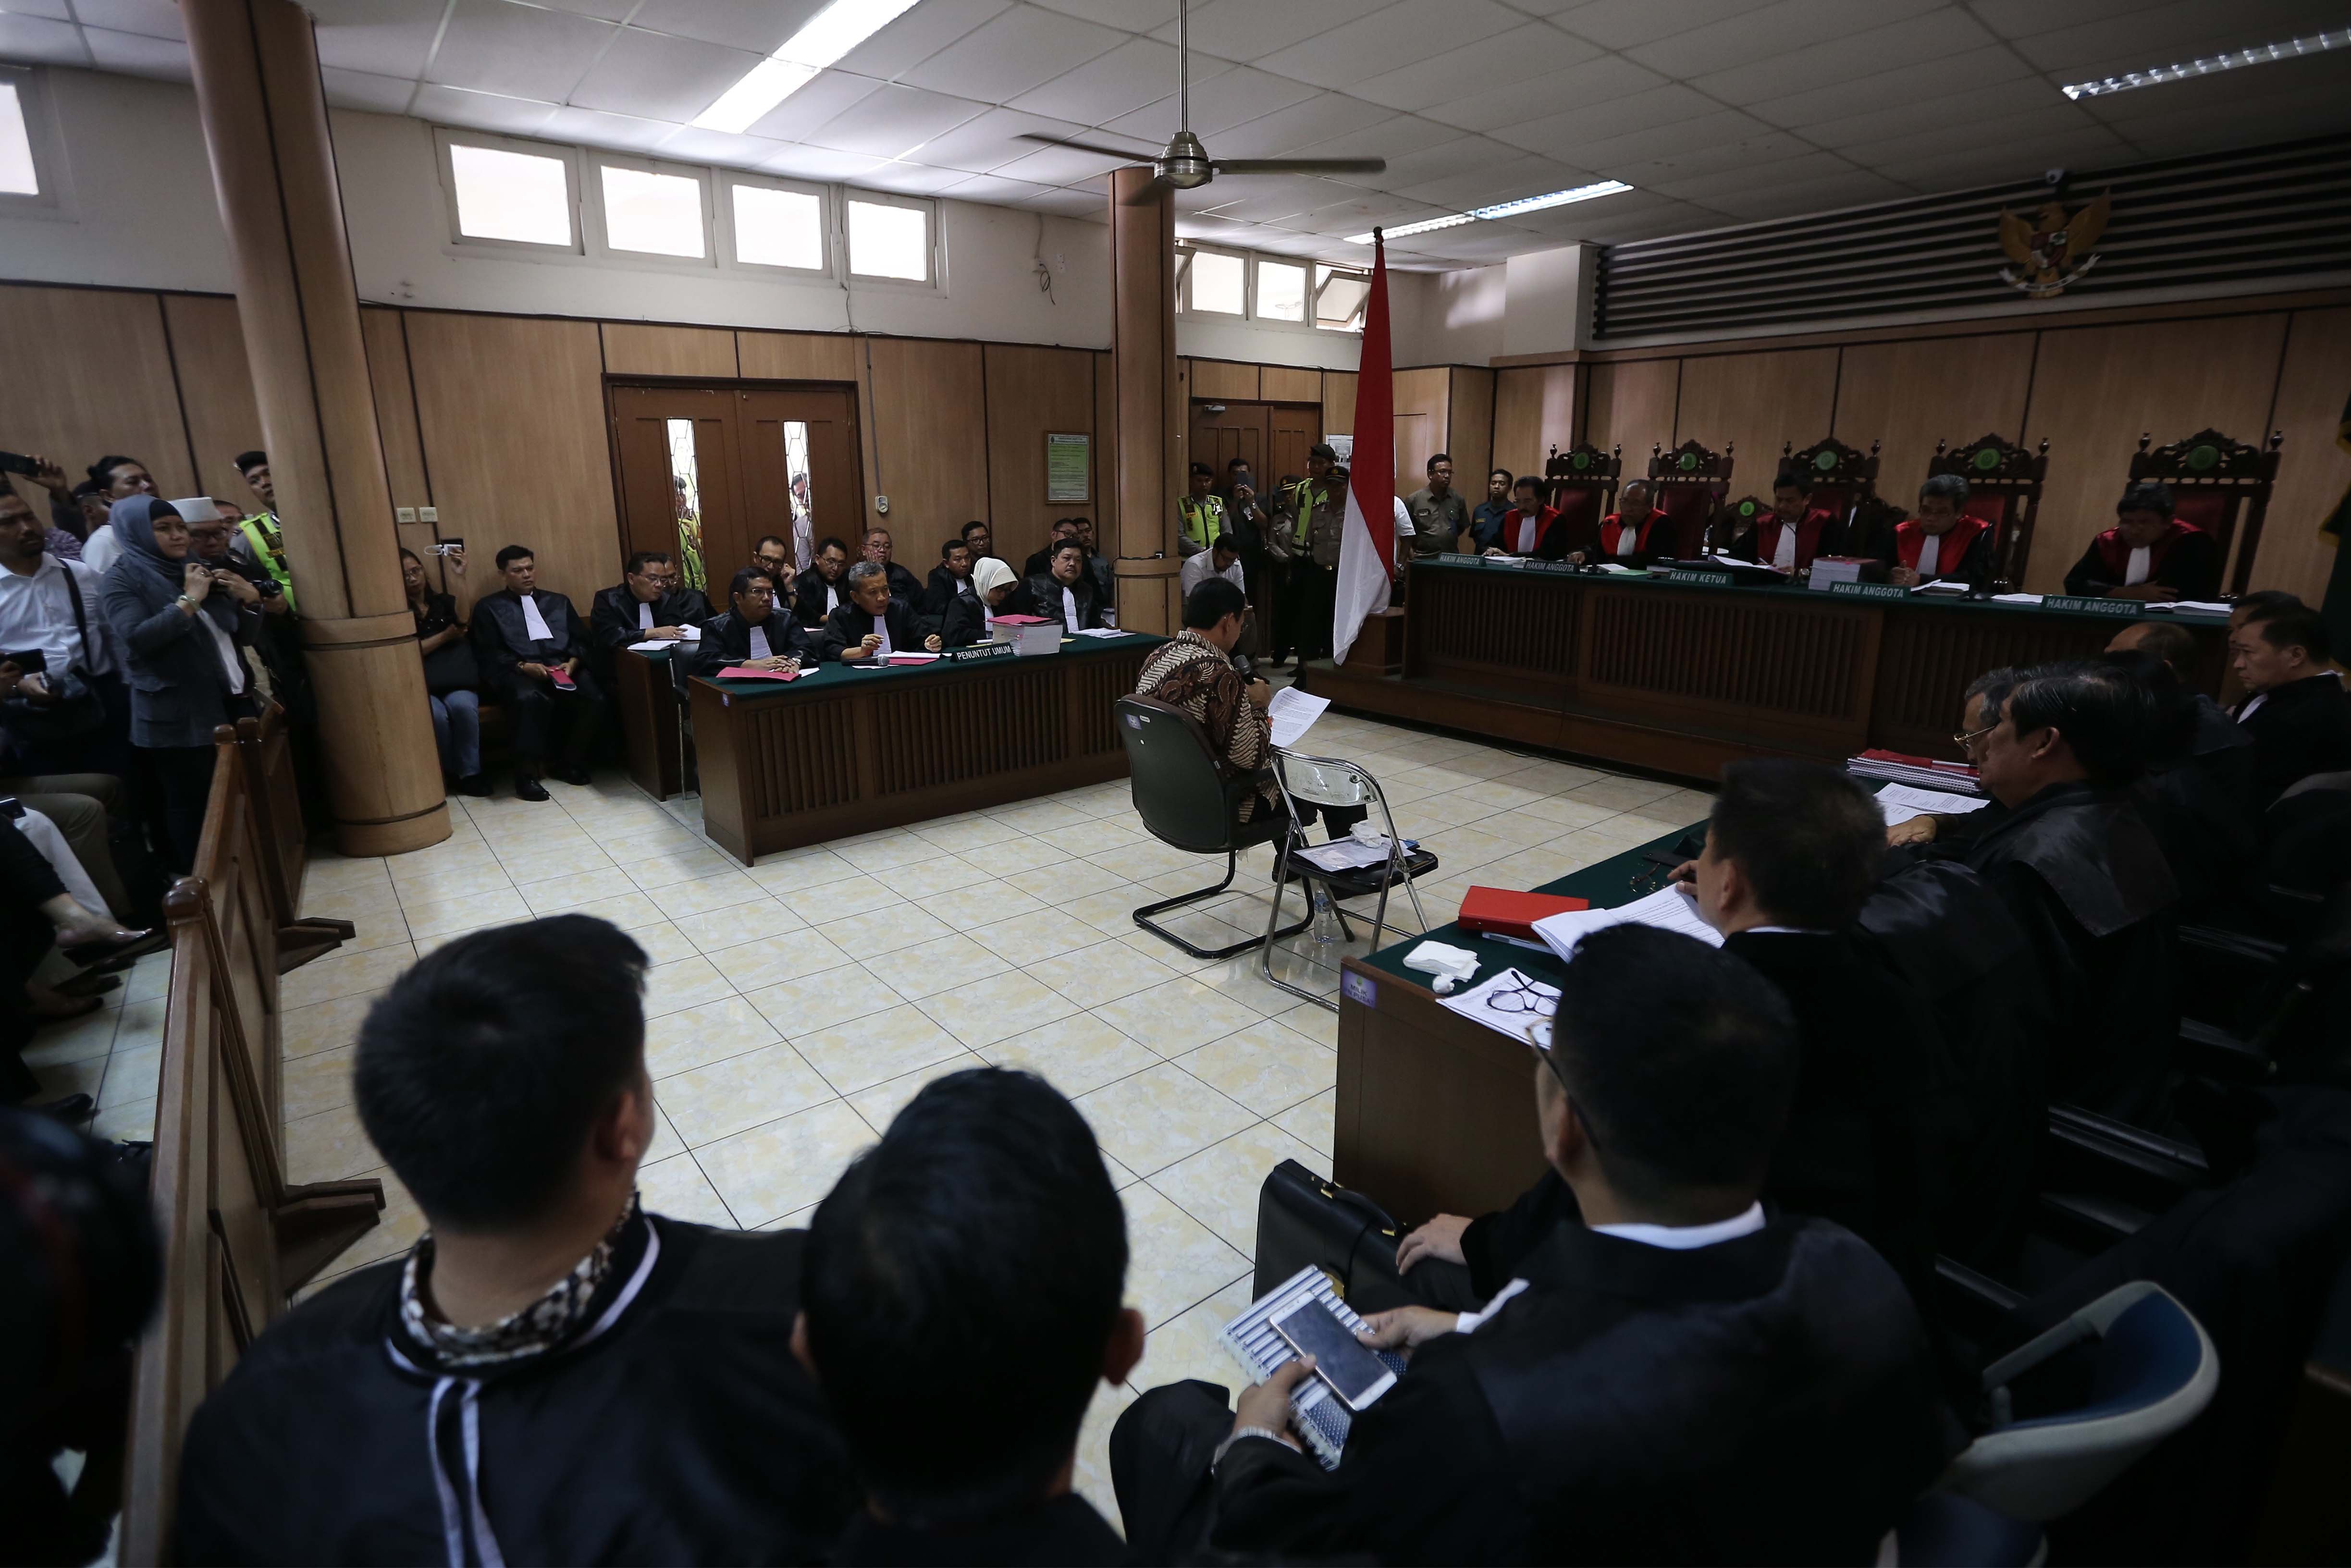 Sidang perdana kasus dugaan penistaan agama dengan tersangka Gubernur nonaktif DKI Jakarta Basuki Tjahaja Purnama (Ahok) di bekas Gedung Pengadilan Negeri Jakarta Pusat, Jalan Gajah Mada, Jakarta Pusat, Selasa (13/12).